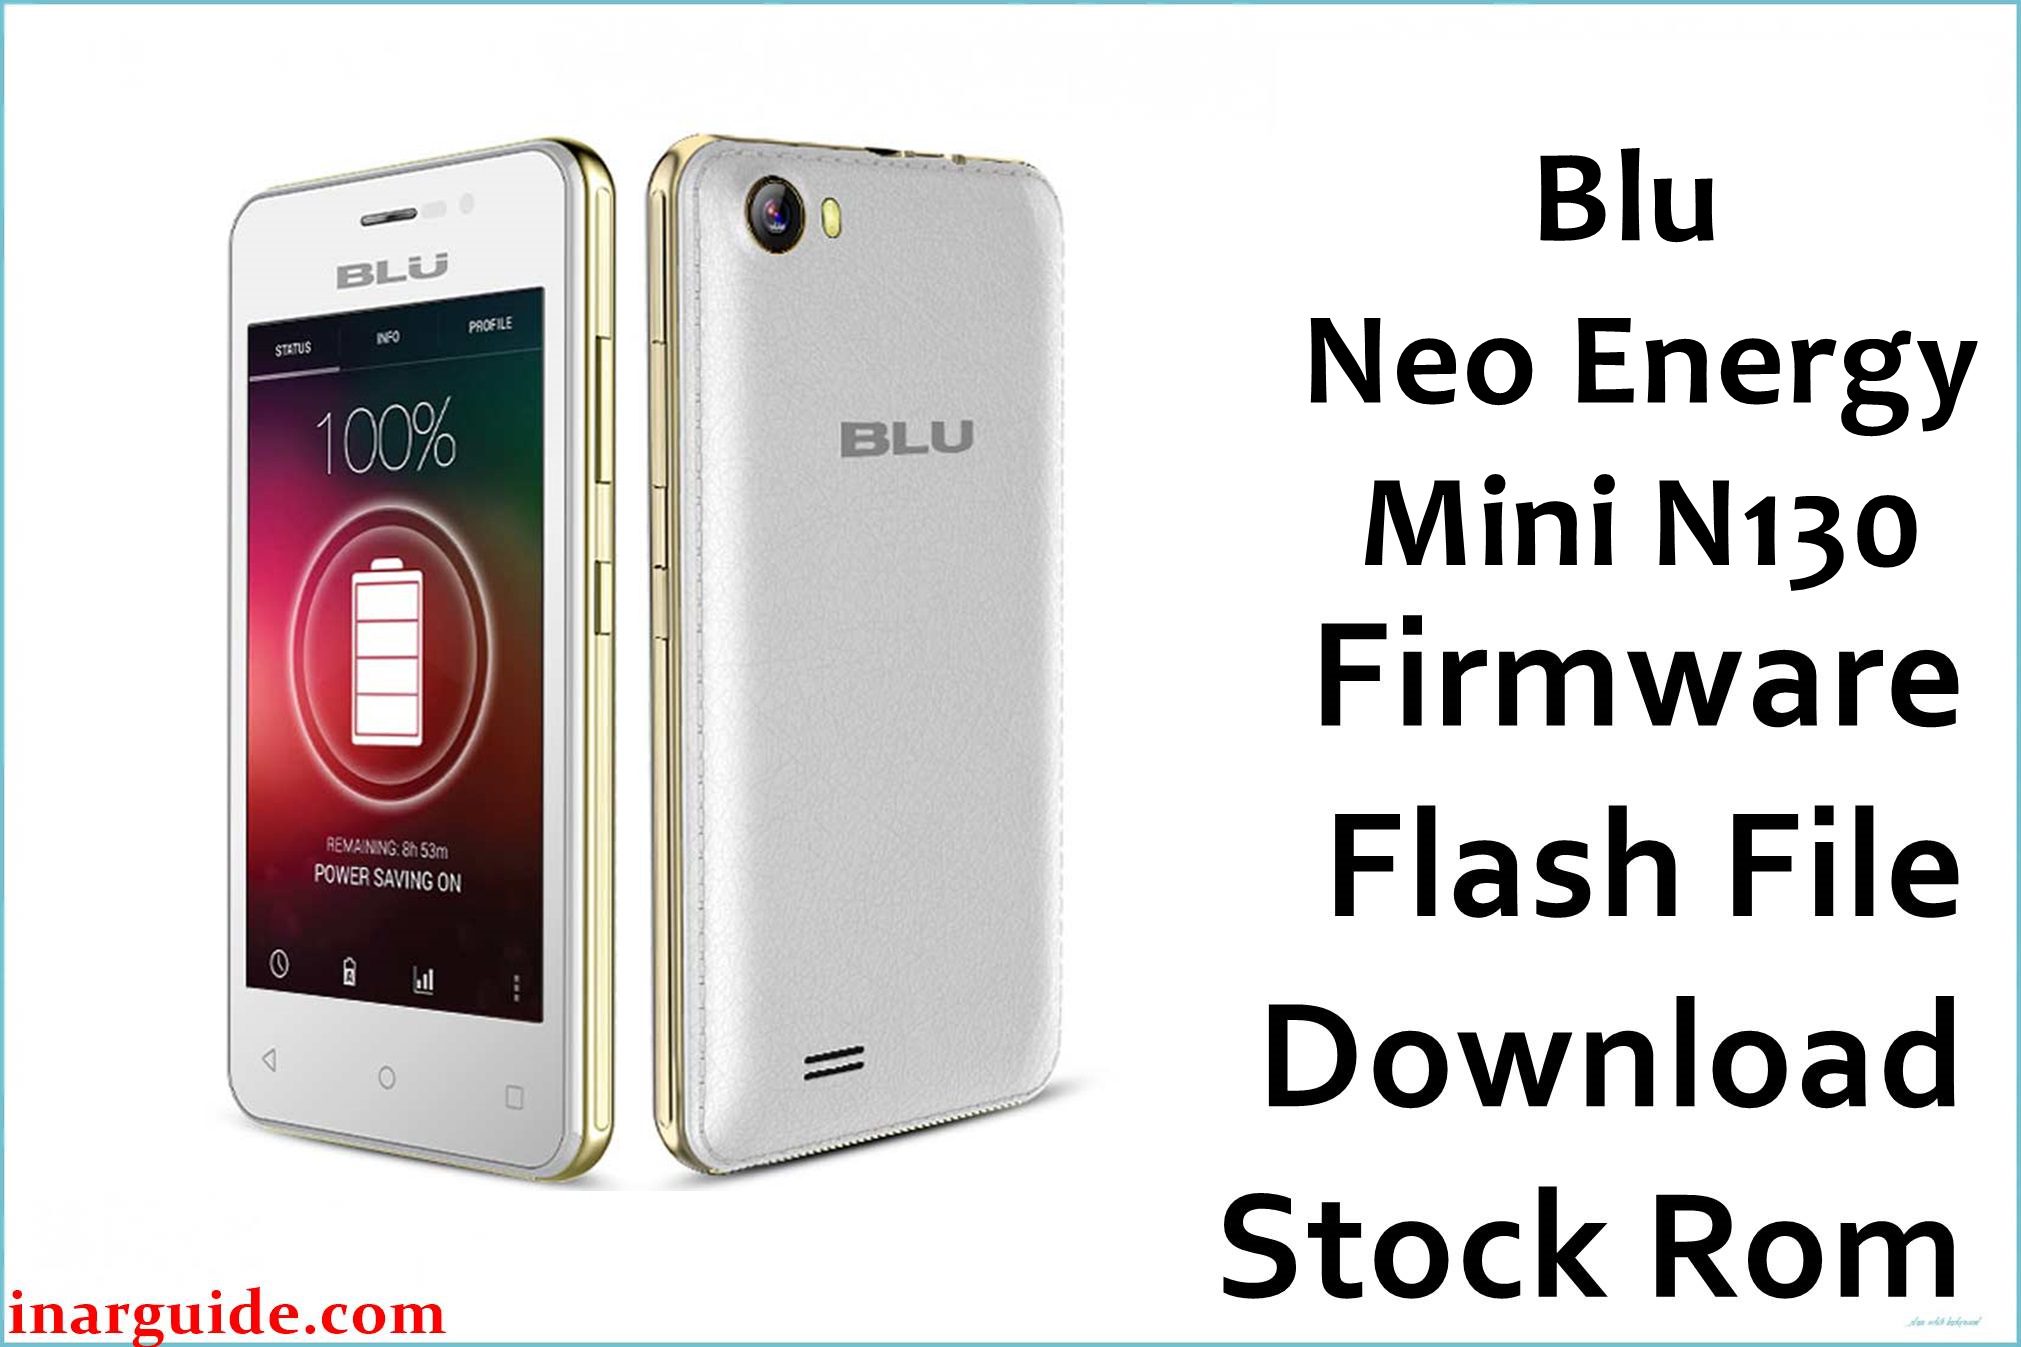 Blu Neo Energy Mini N130